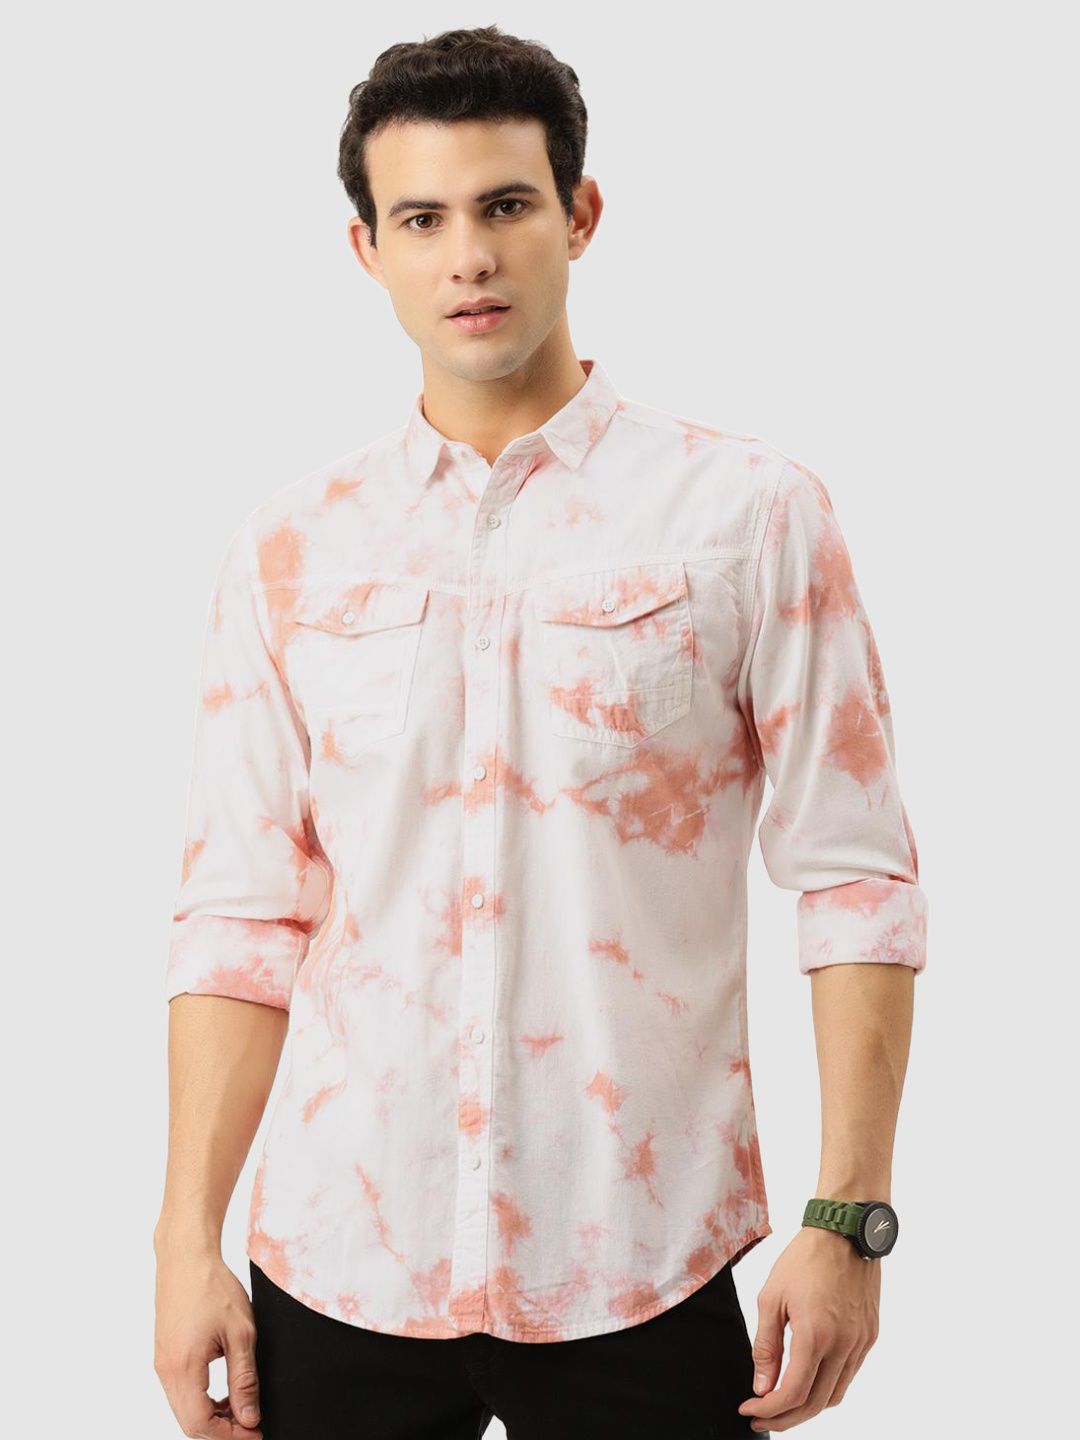     			Bene Kleed - Peach Cotton Blend Regular Fit Men's Casual Shirt ( Pack of 1 )